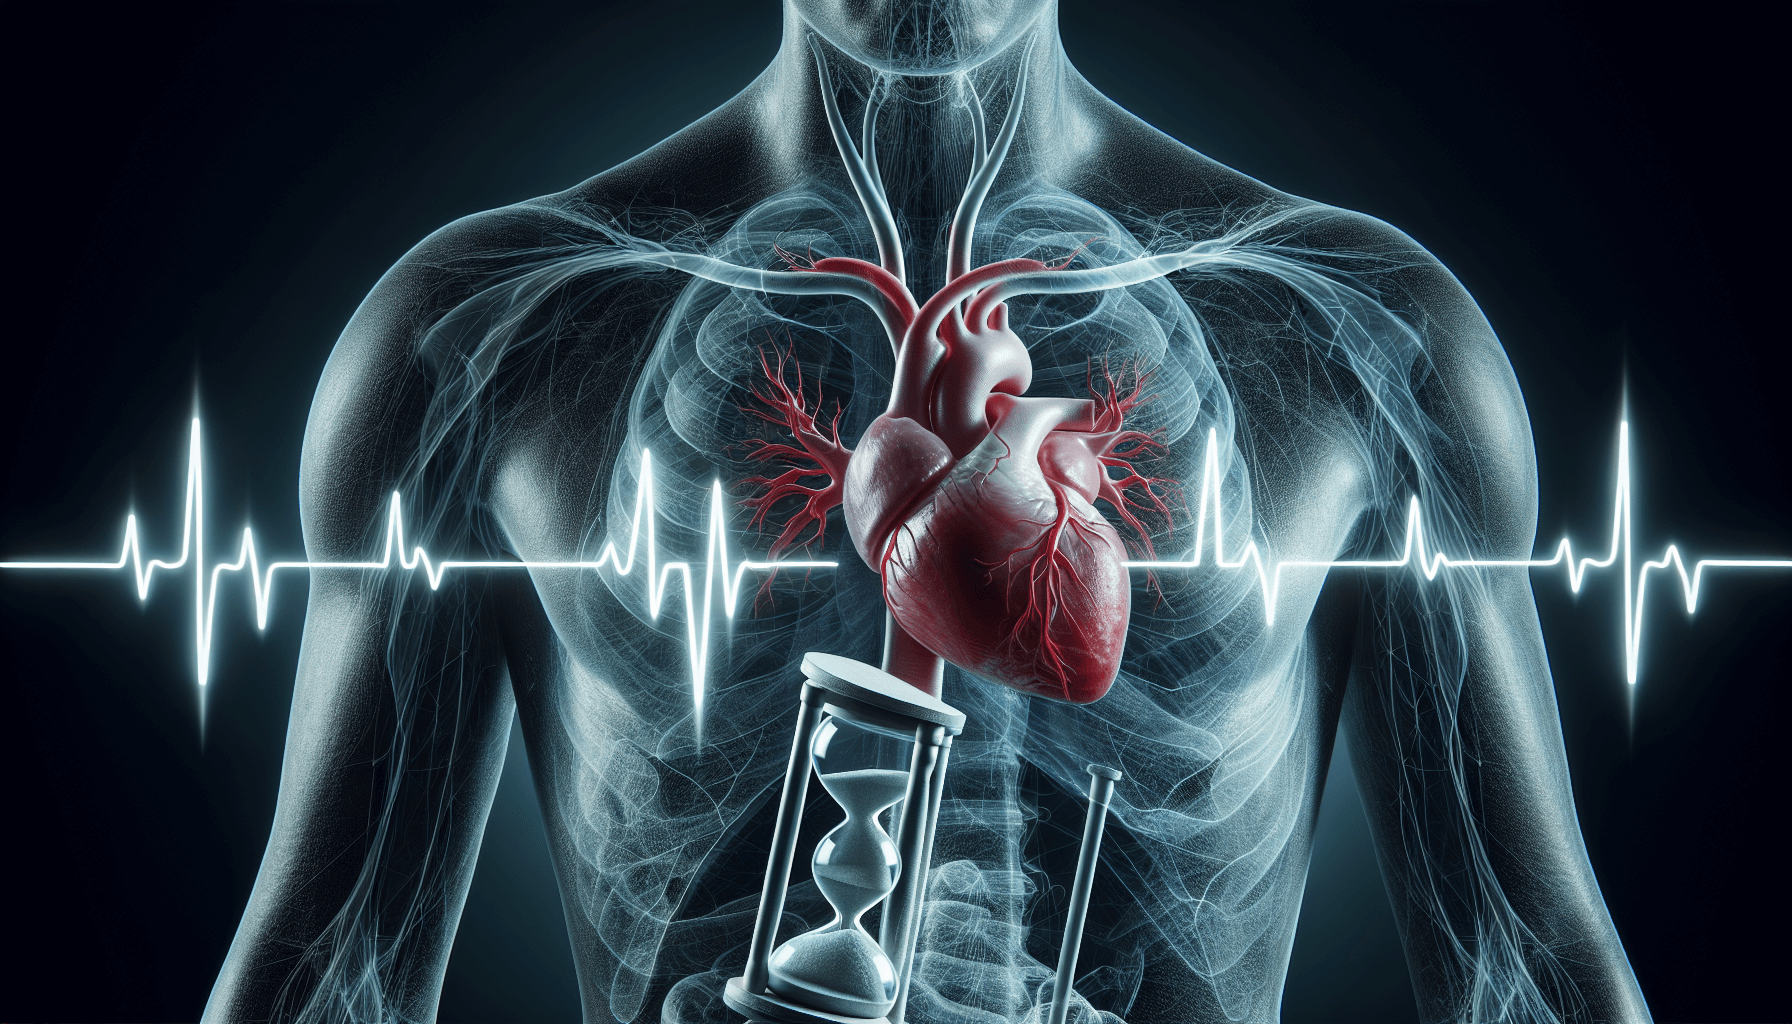 Απεικόνιση μιας καρδιάς με ακανόνιστο ρυθμό που συμβολίζει την κολπική μαρμαρυγή